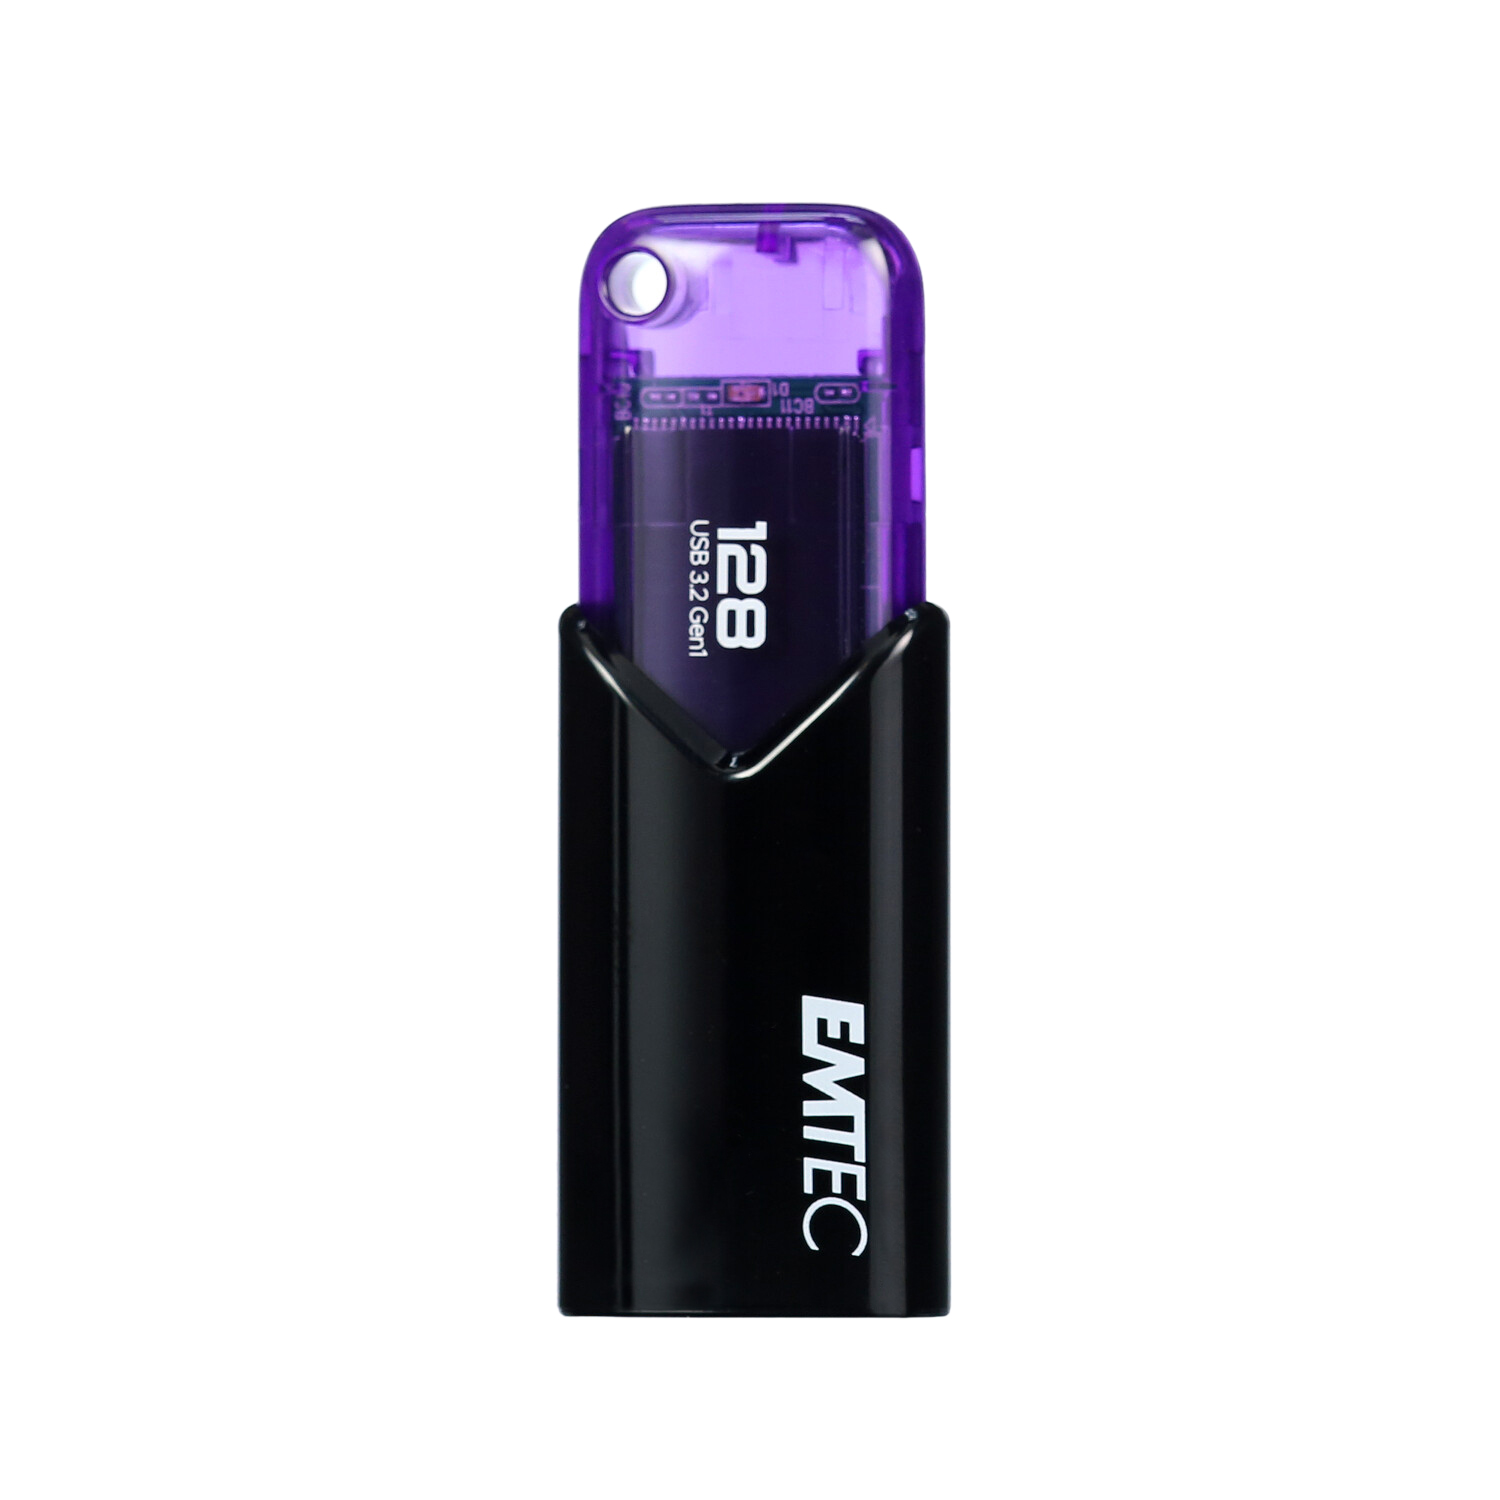 Clef USB 32Go Emtec cle USB 32 Go USB Flash Drive Click Easy USB 3.2 clé  USB 32